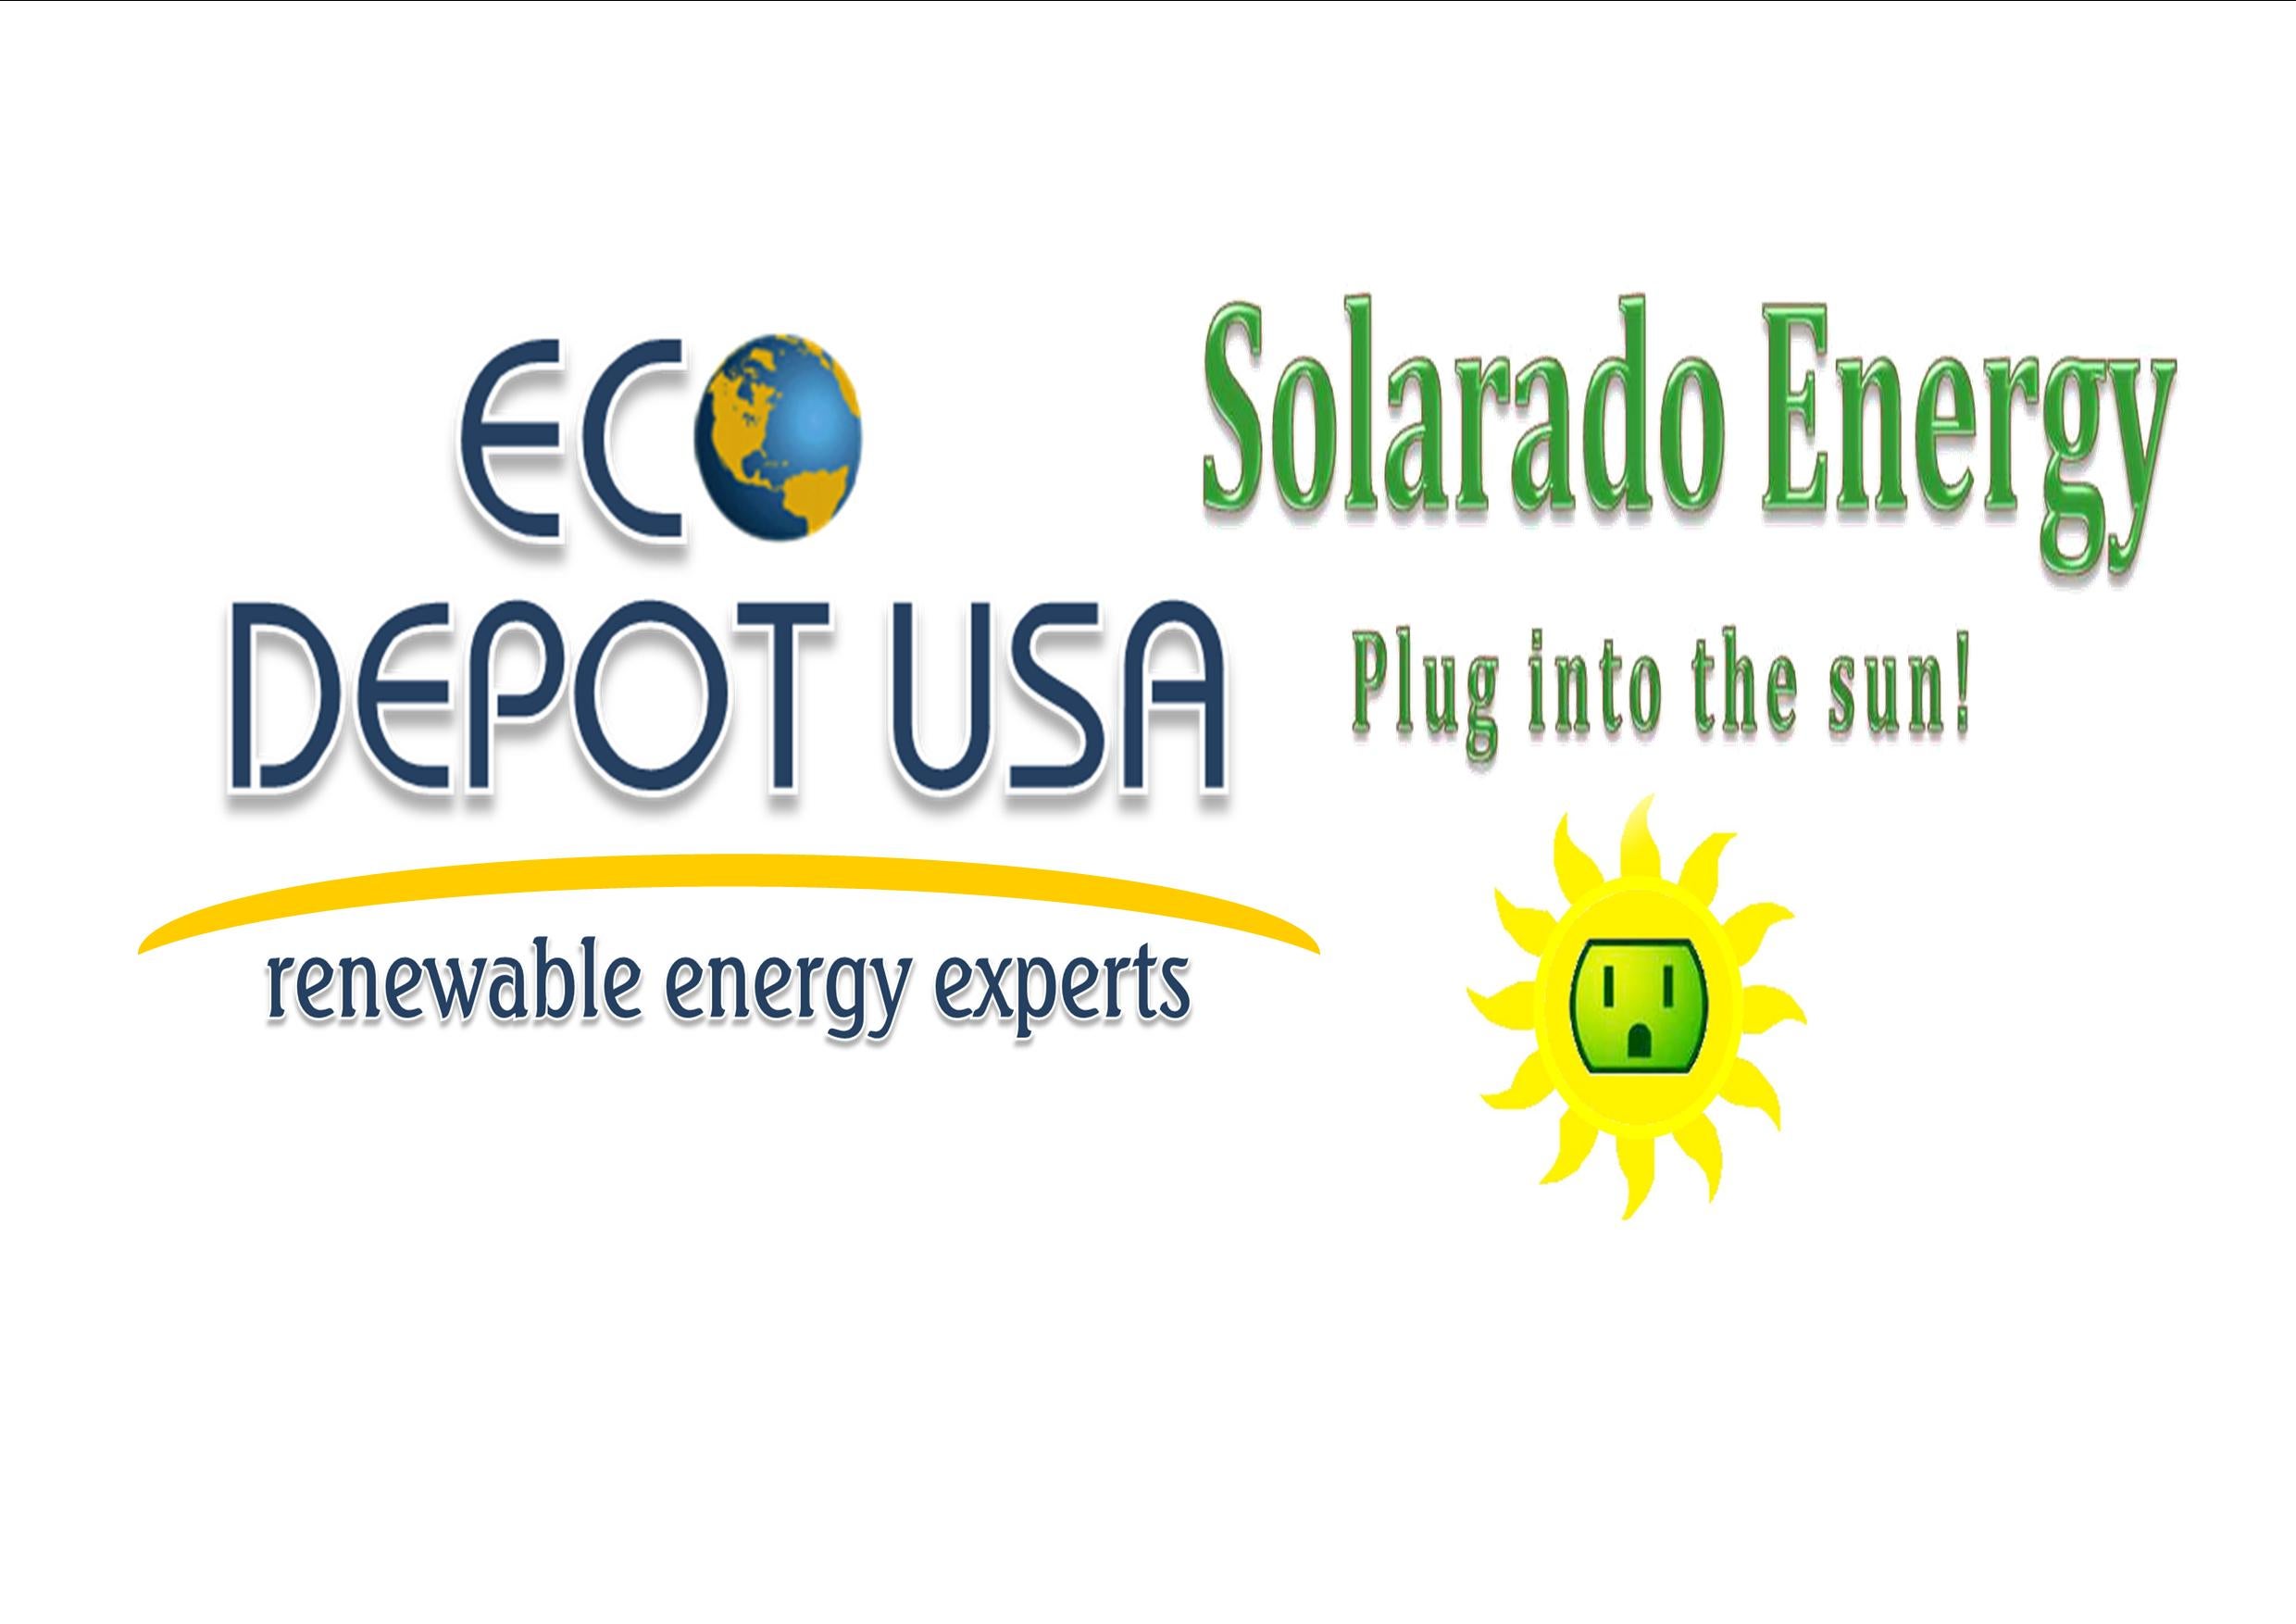 Eco Depot USA / Solarado Energy logo